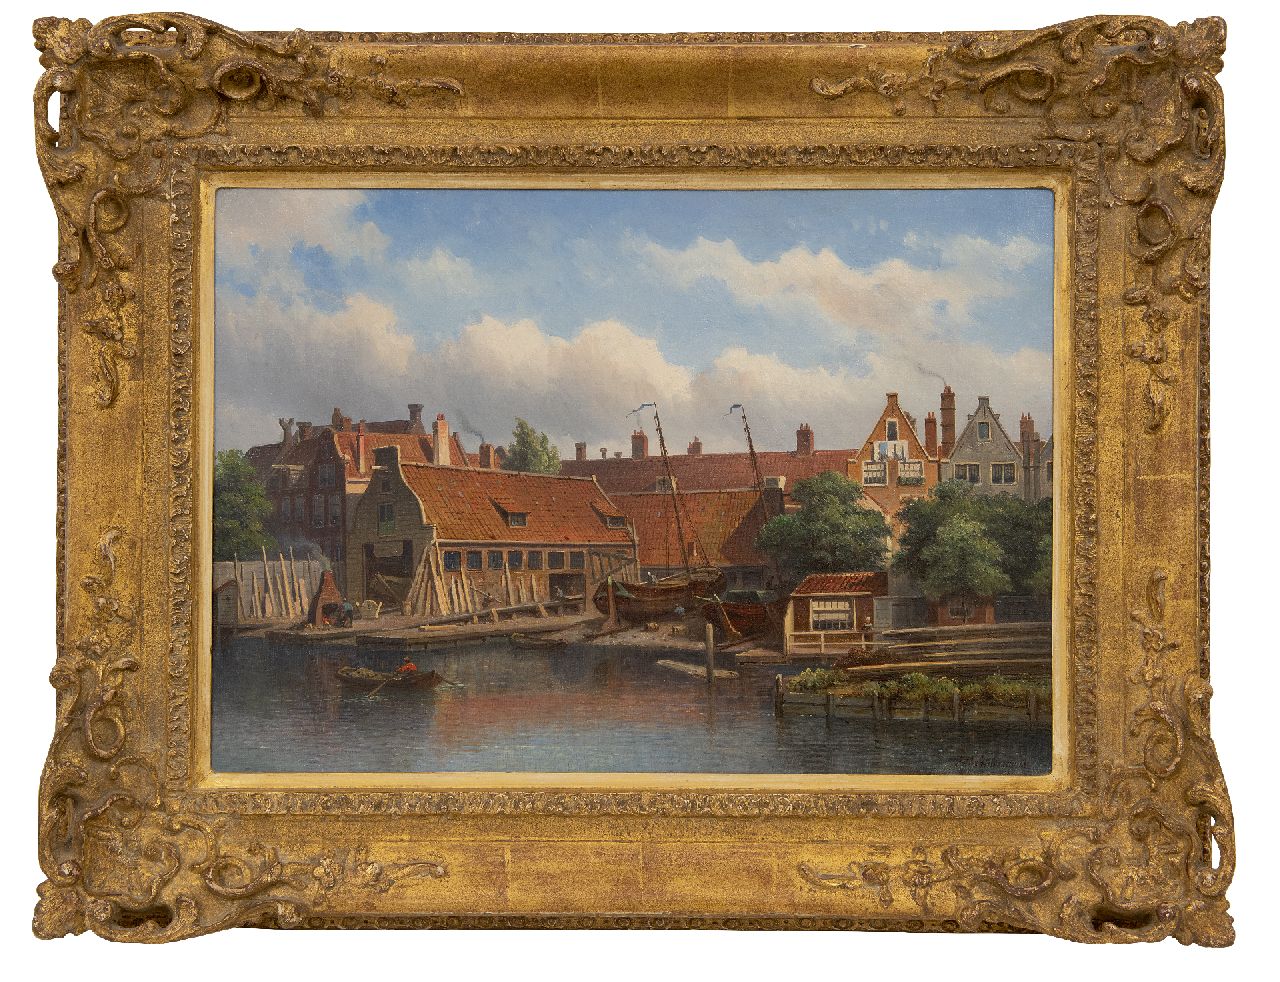 Hilverdink E.A.  | Eduard Alexander Hilverdink, Shipyard 'Het Jagt' in Amsterdam, oil on canvas 35.0 x 50.2 cm, signed l.r.